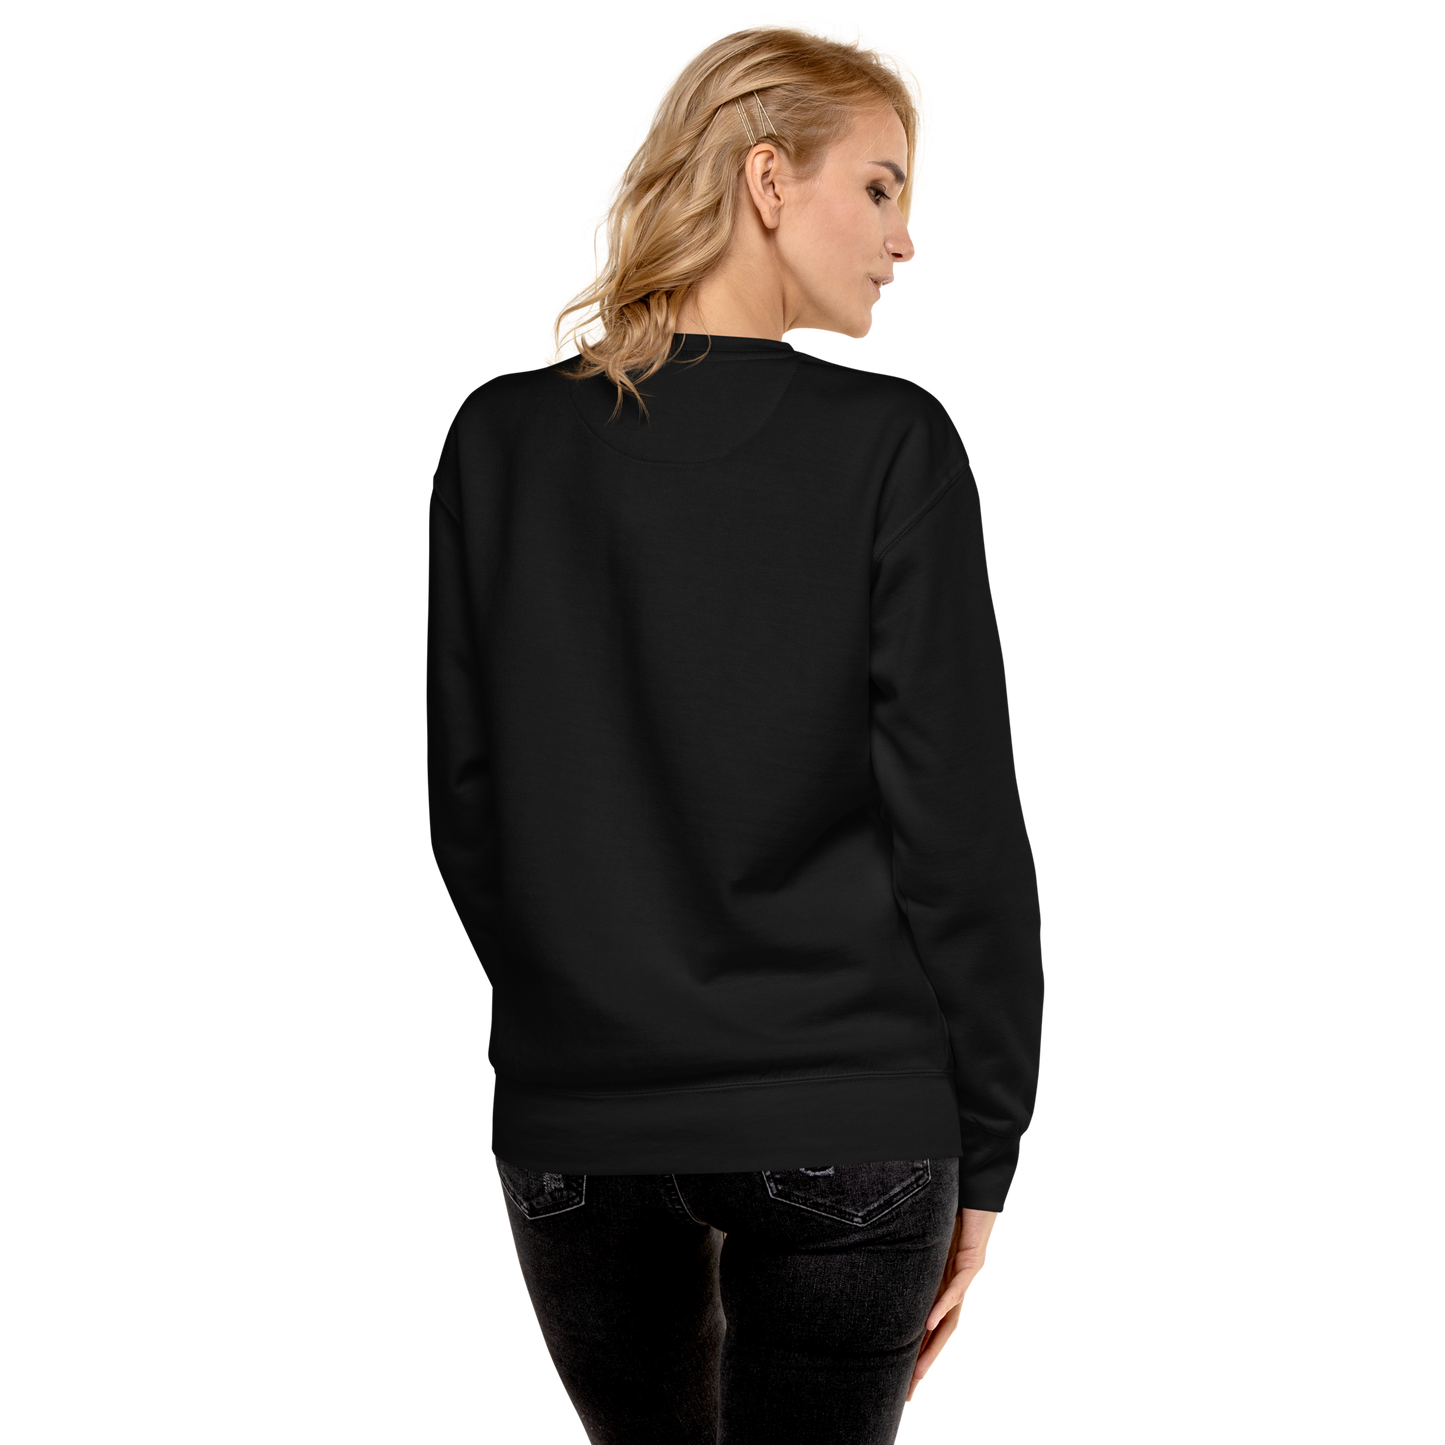 GNOCCHI Unisex Premium Sweatshirt Black